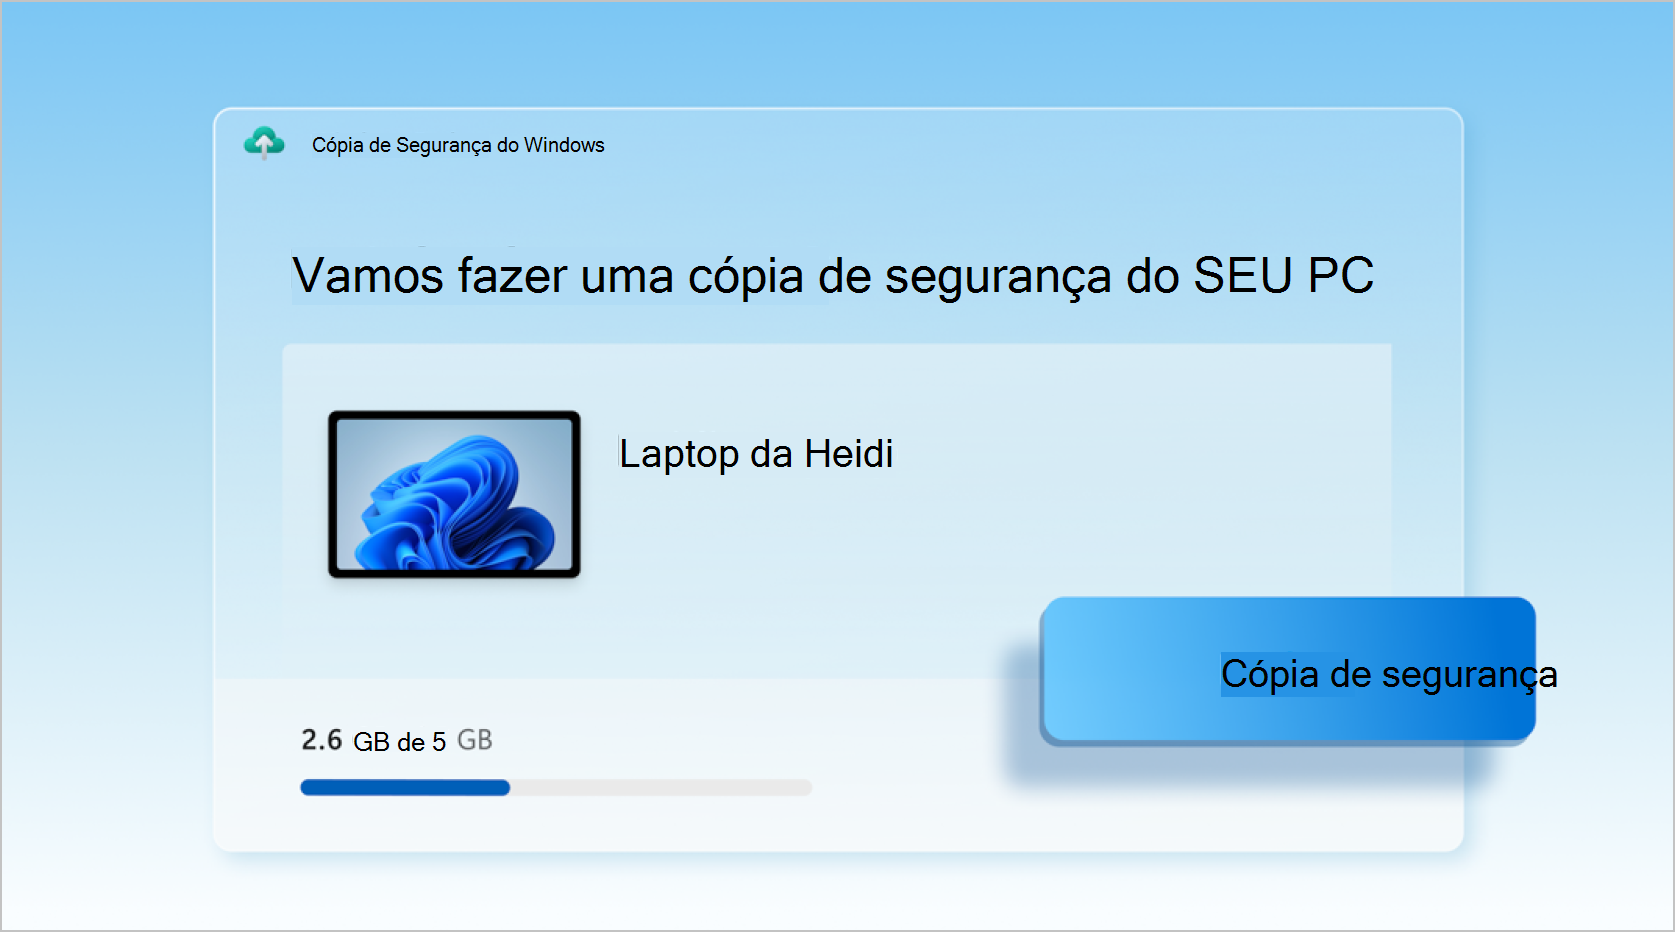 Captura de ecrã a mostrar Cópia de Segurança do Windows a ser utilizado para criar cópias de segurança de um portátil.